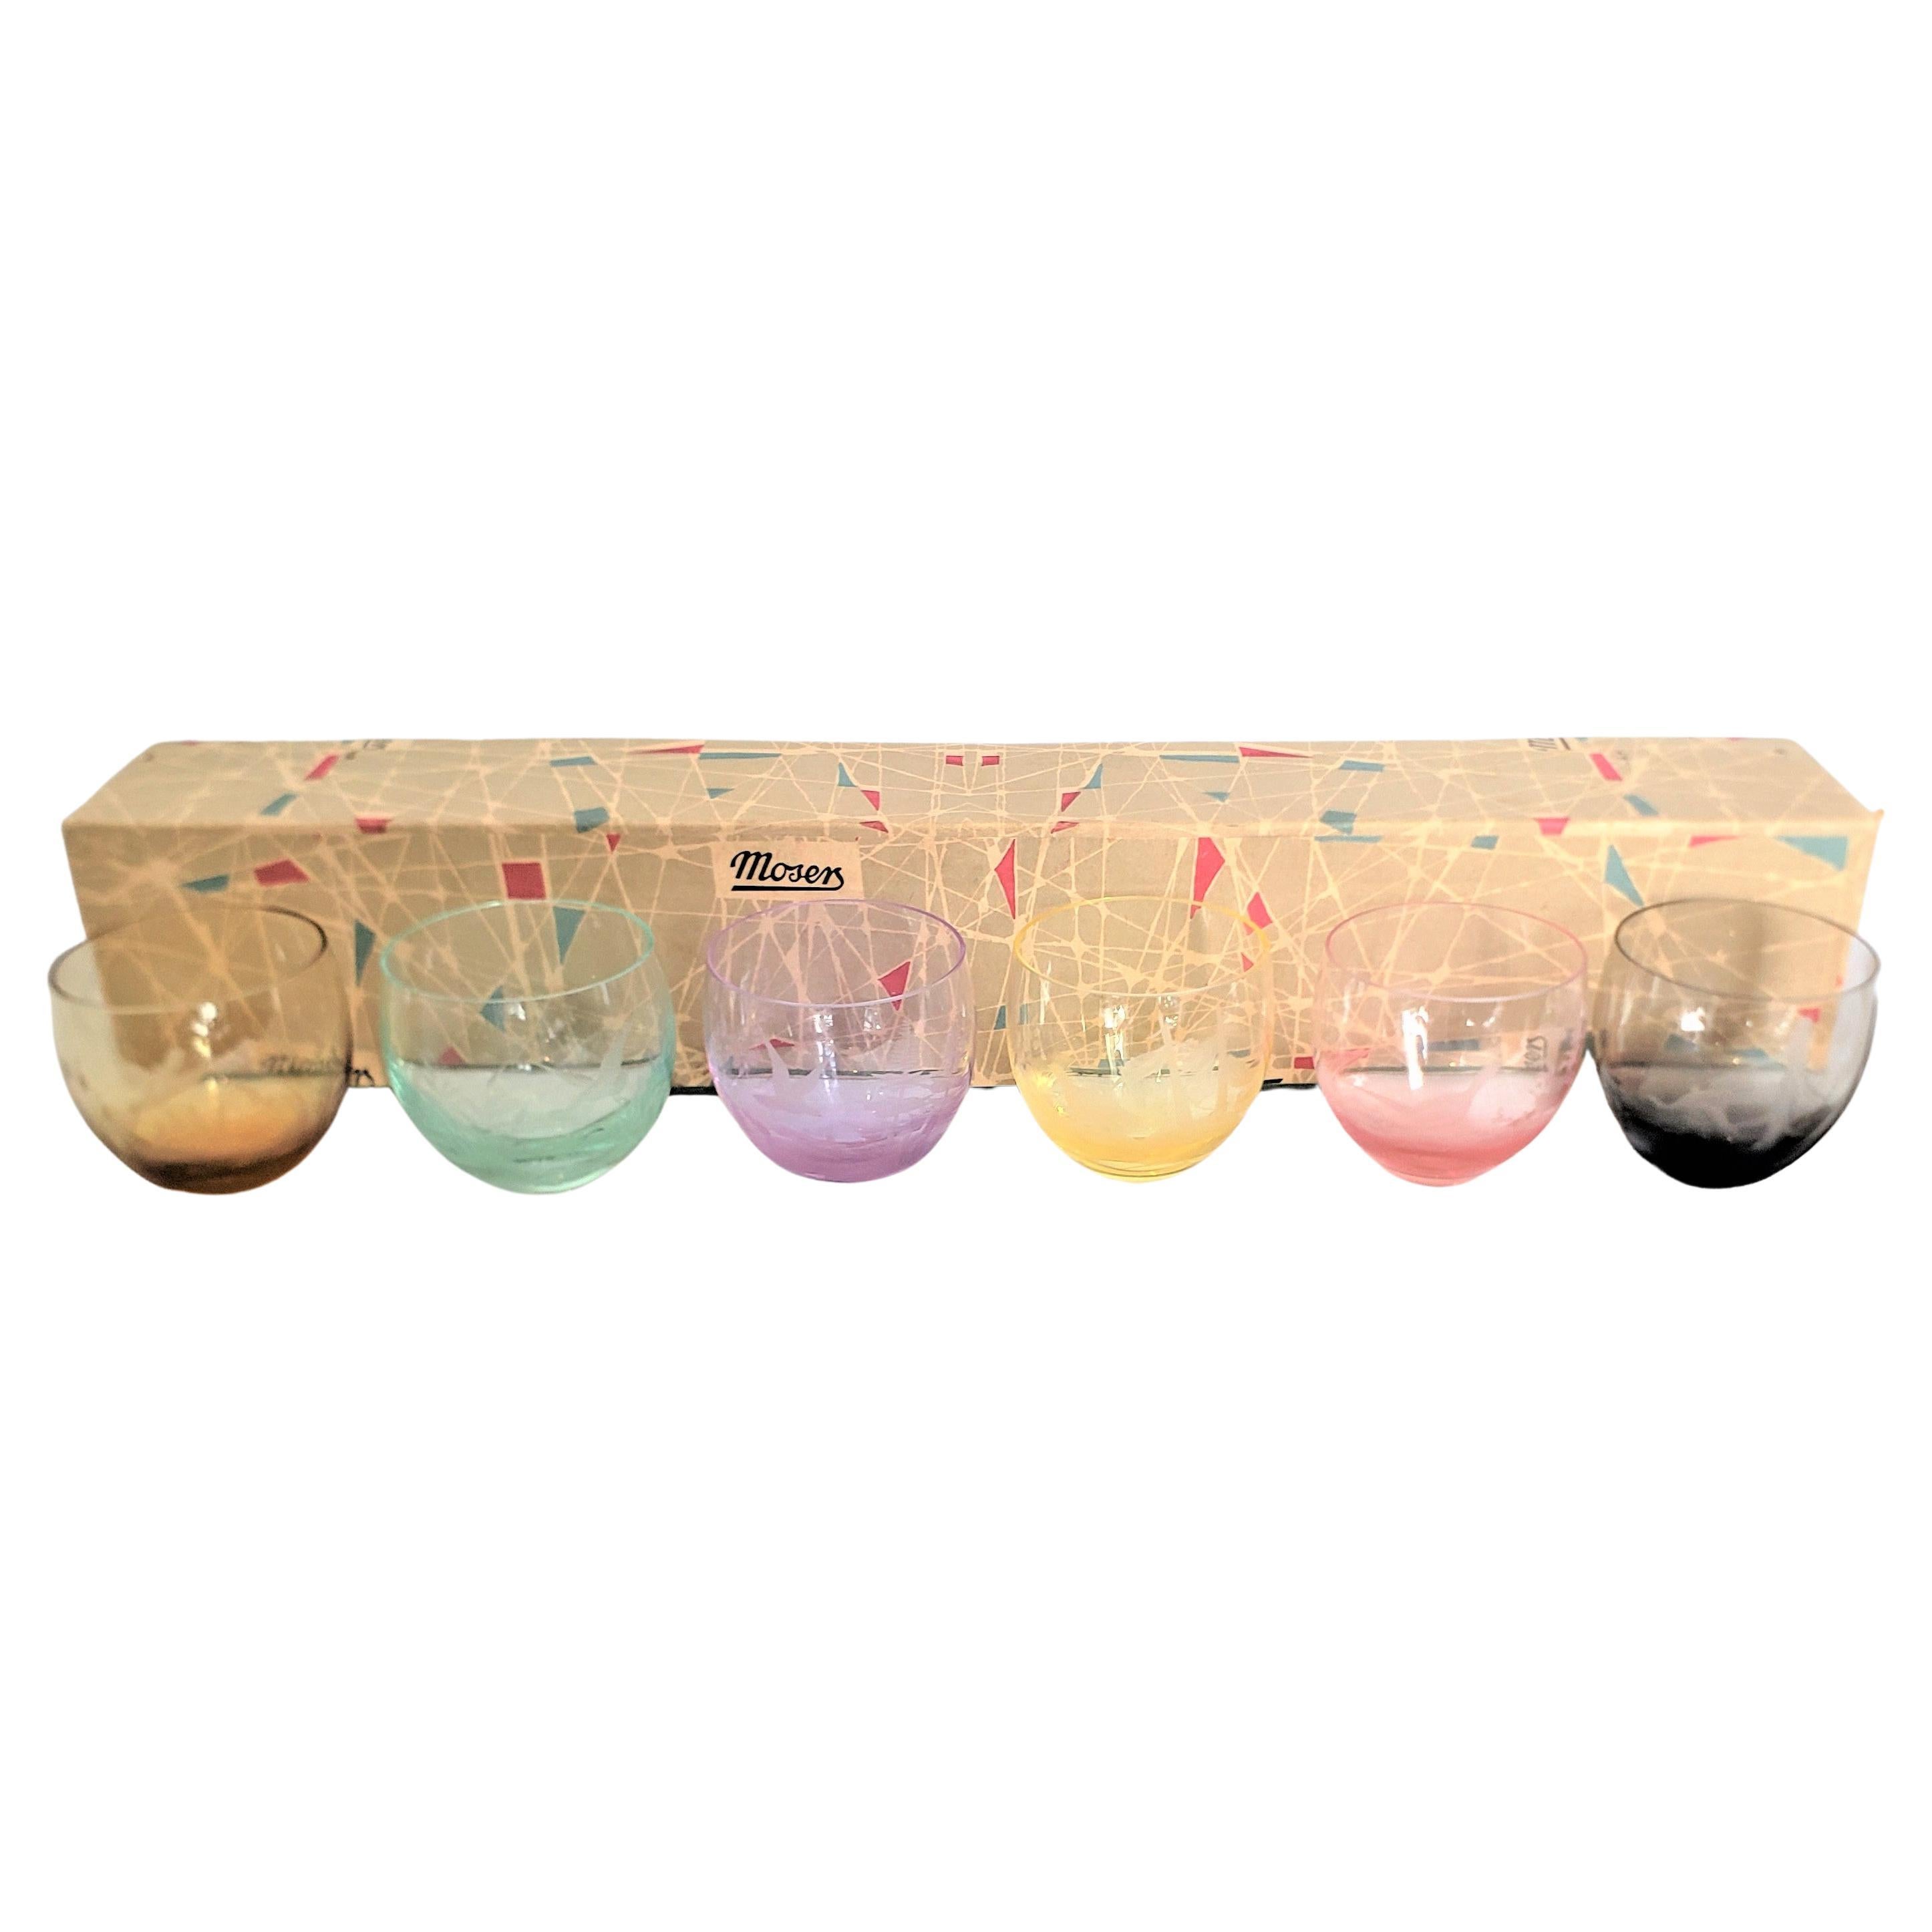 Ensemble de 6 verres de bar en cristal buriné coloré et gravé, de style mi-siècle moderne, avec boîte